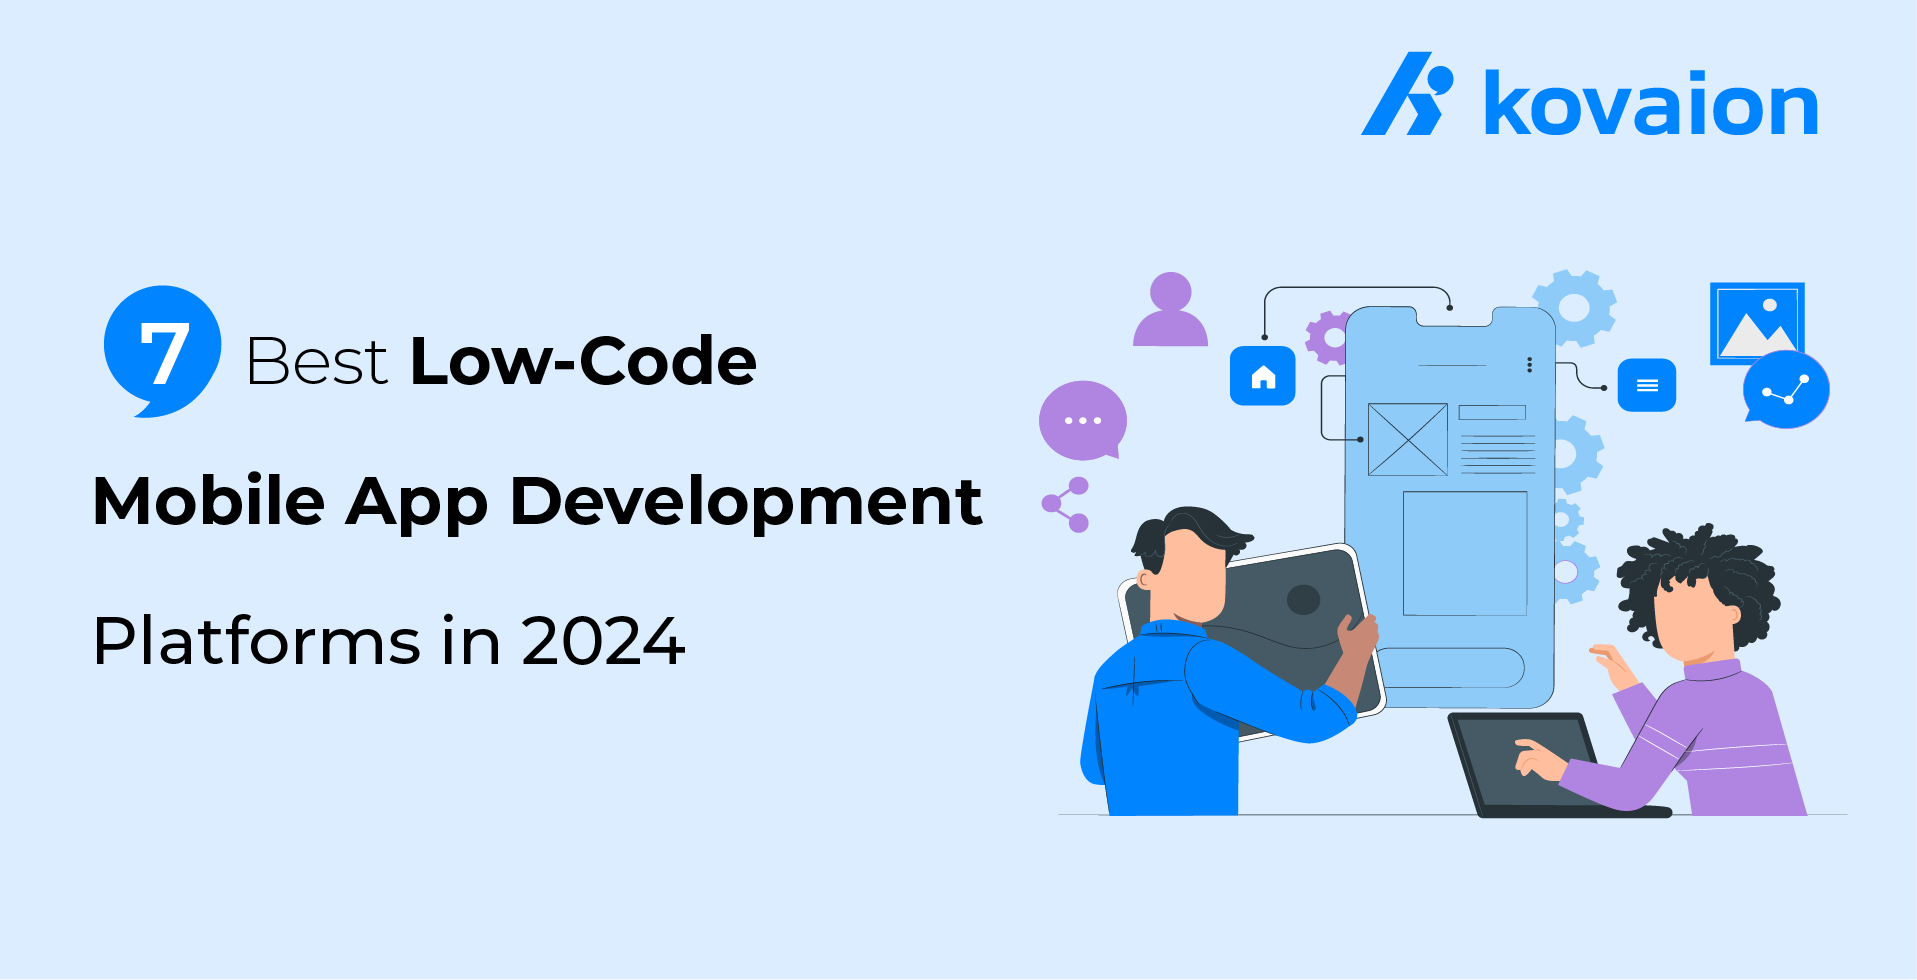 7-Best-Low-Code-Mobile-App-Development-Platforms-in-2024 